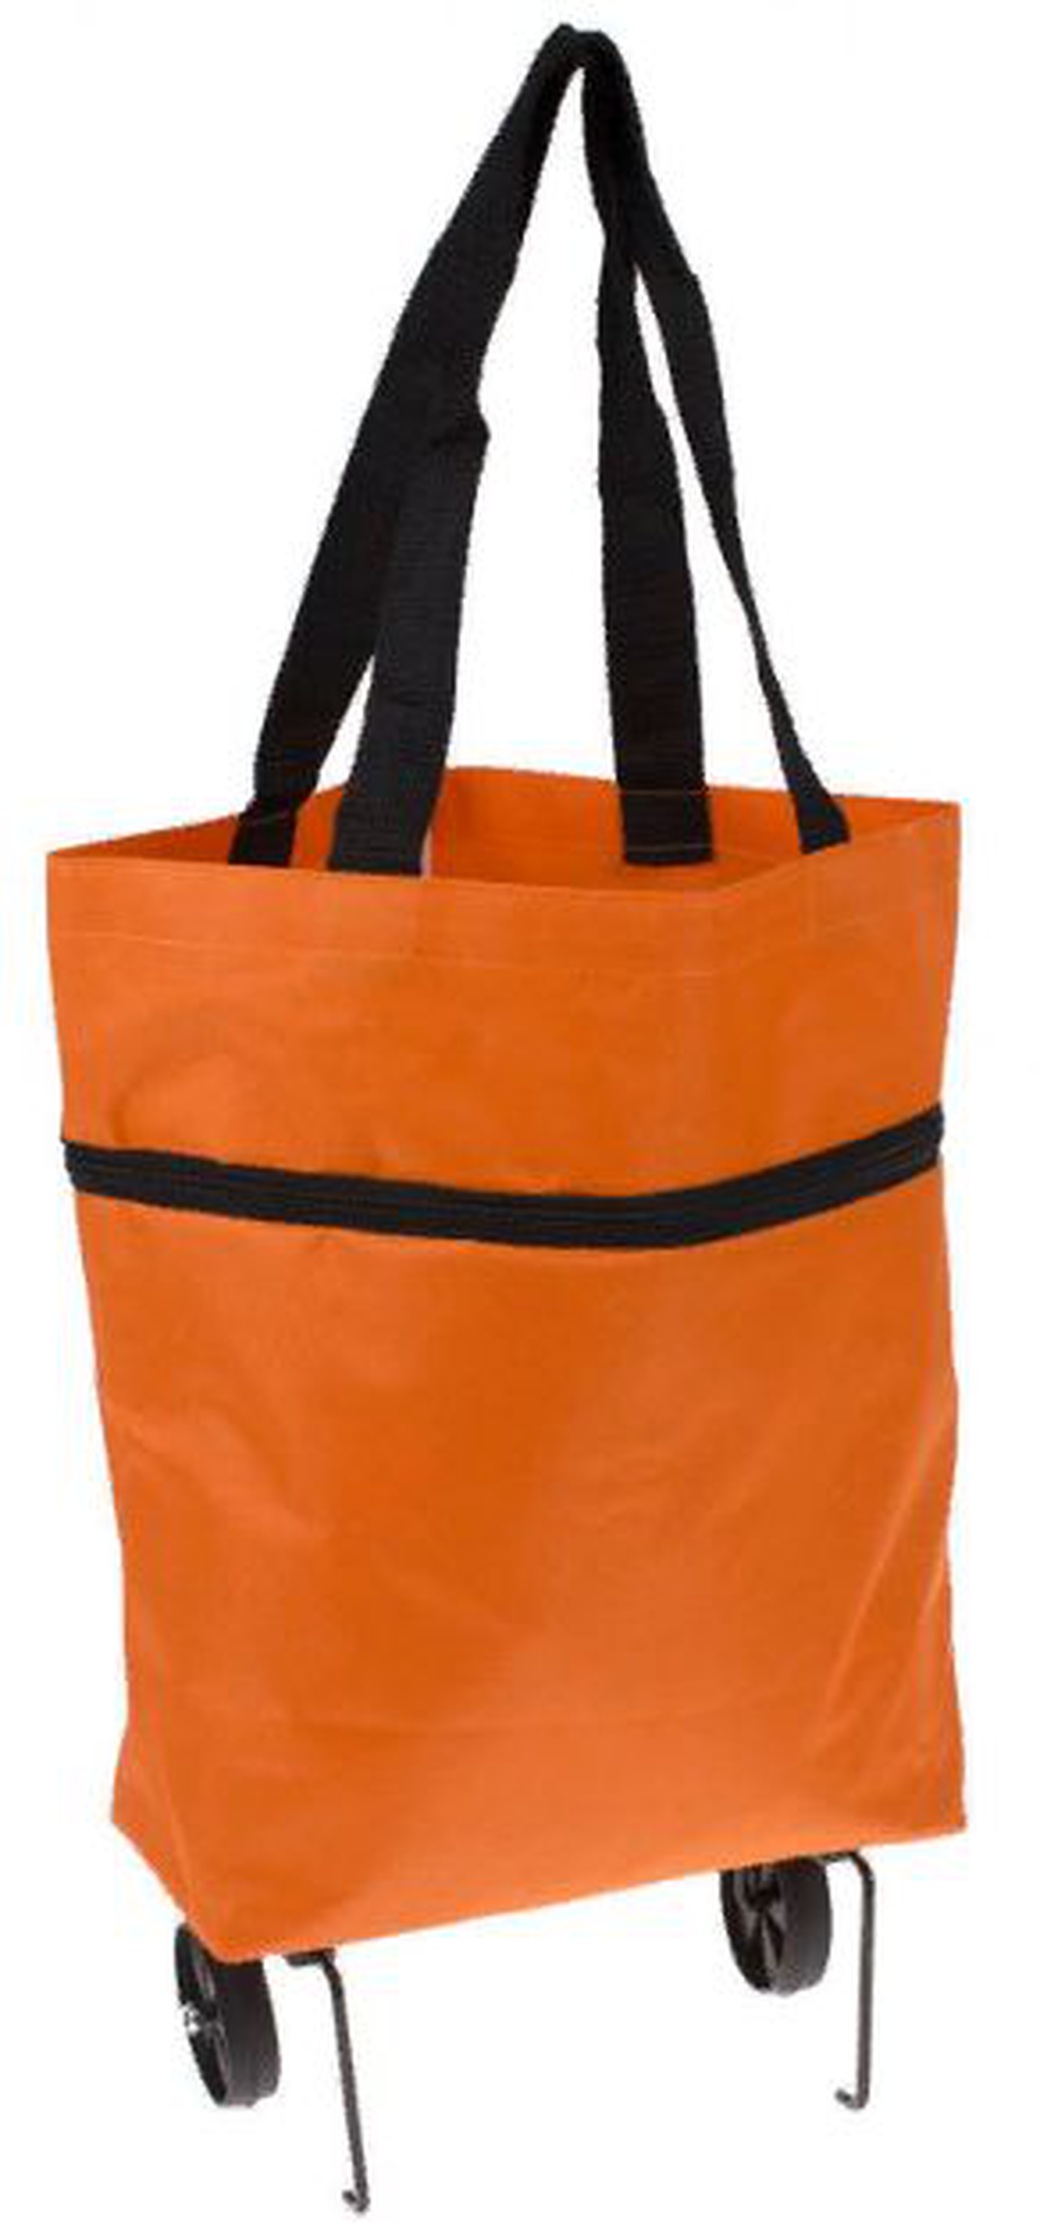 Хозяйственная складная сумка Bradex с выдвижными колесиками, оранжевый фото